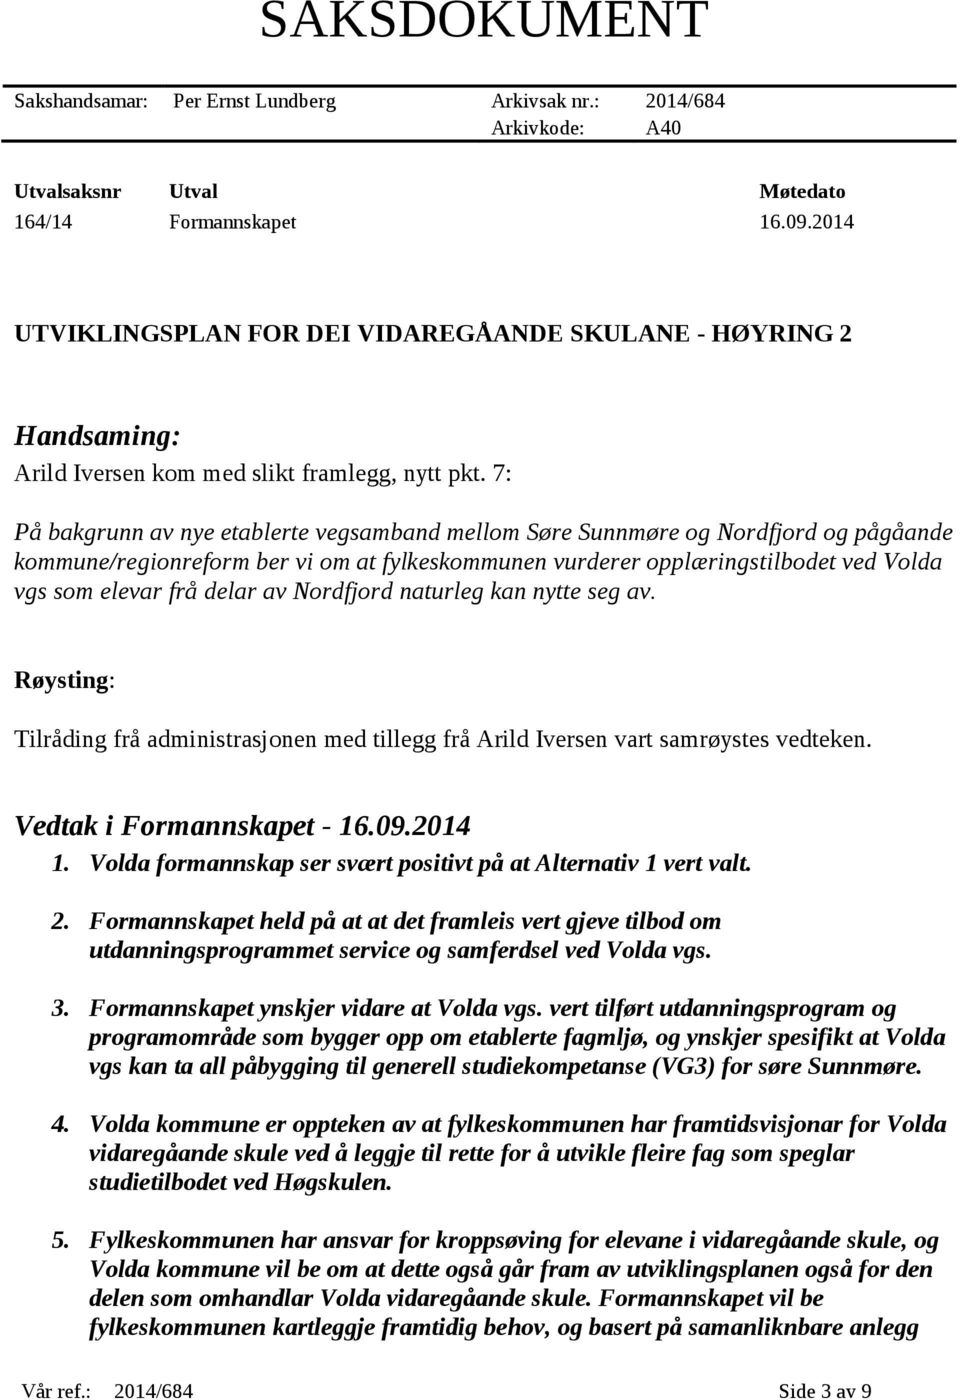 7: På bakgrunn av nye etablerte vegsamband mellom Søre Sunnmøre og Nordfjord og pågåande kommune/regionreform ber vi om at fylkeskommunen vurderer opplæringstilbodet ved Volda vgs som elevar frå